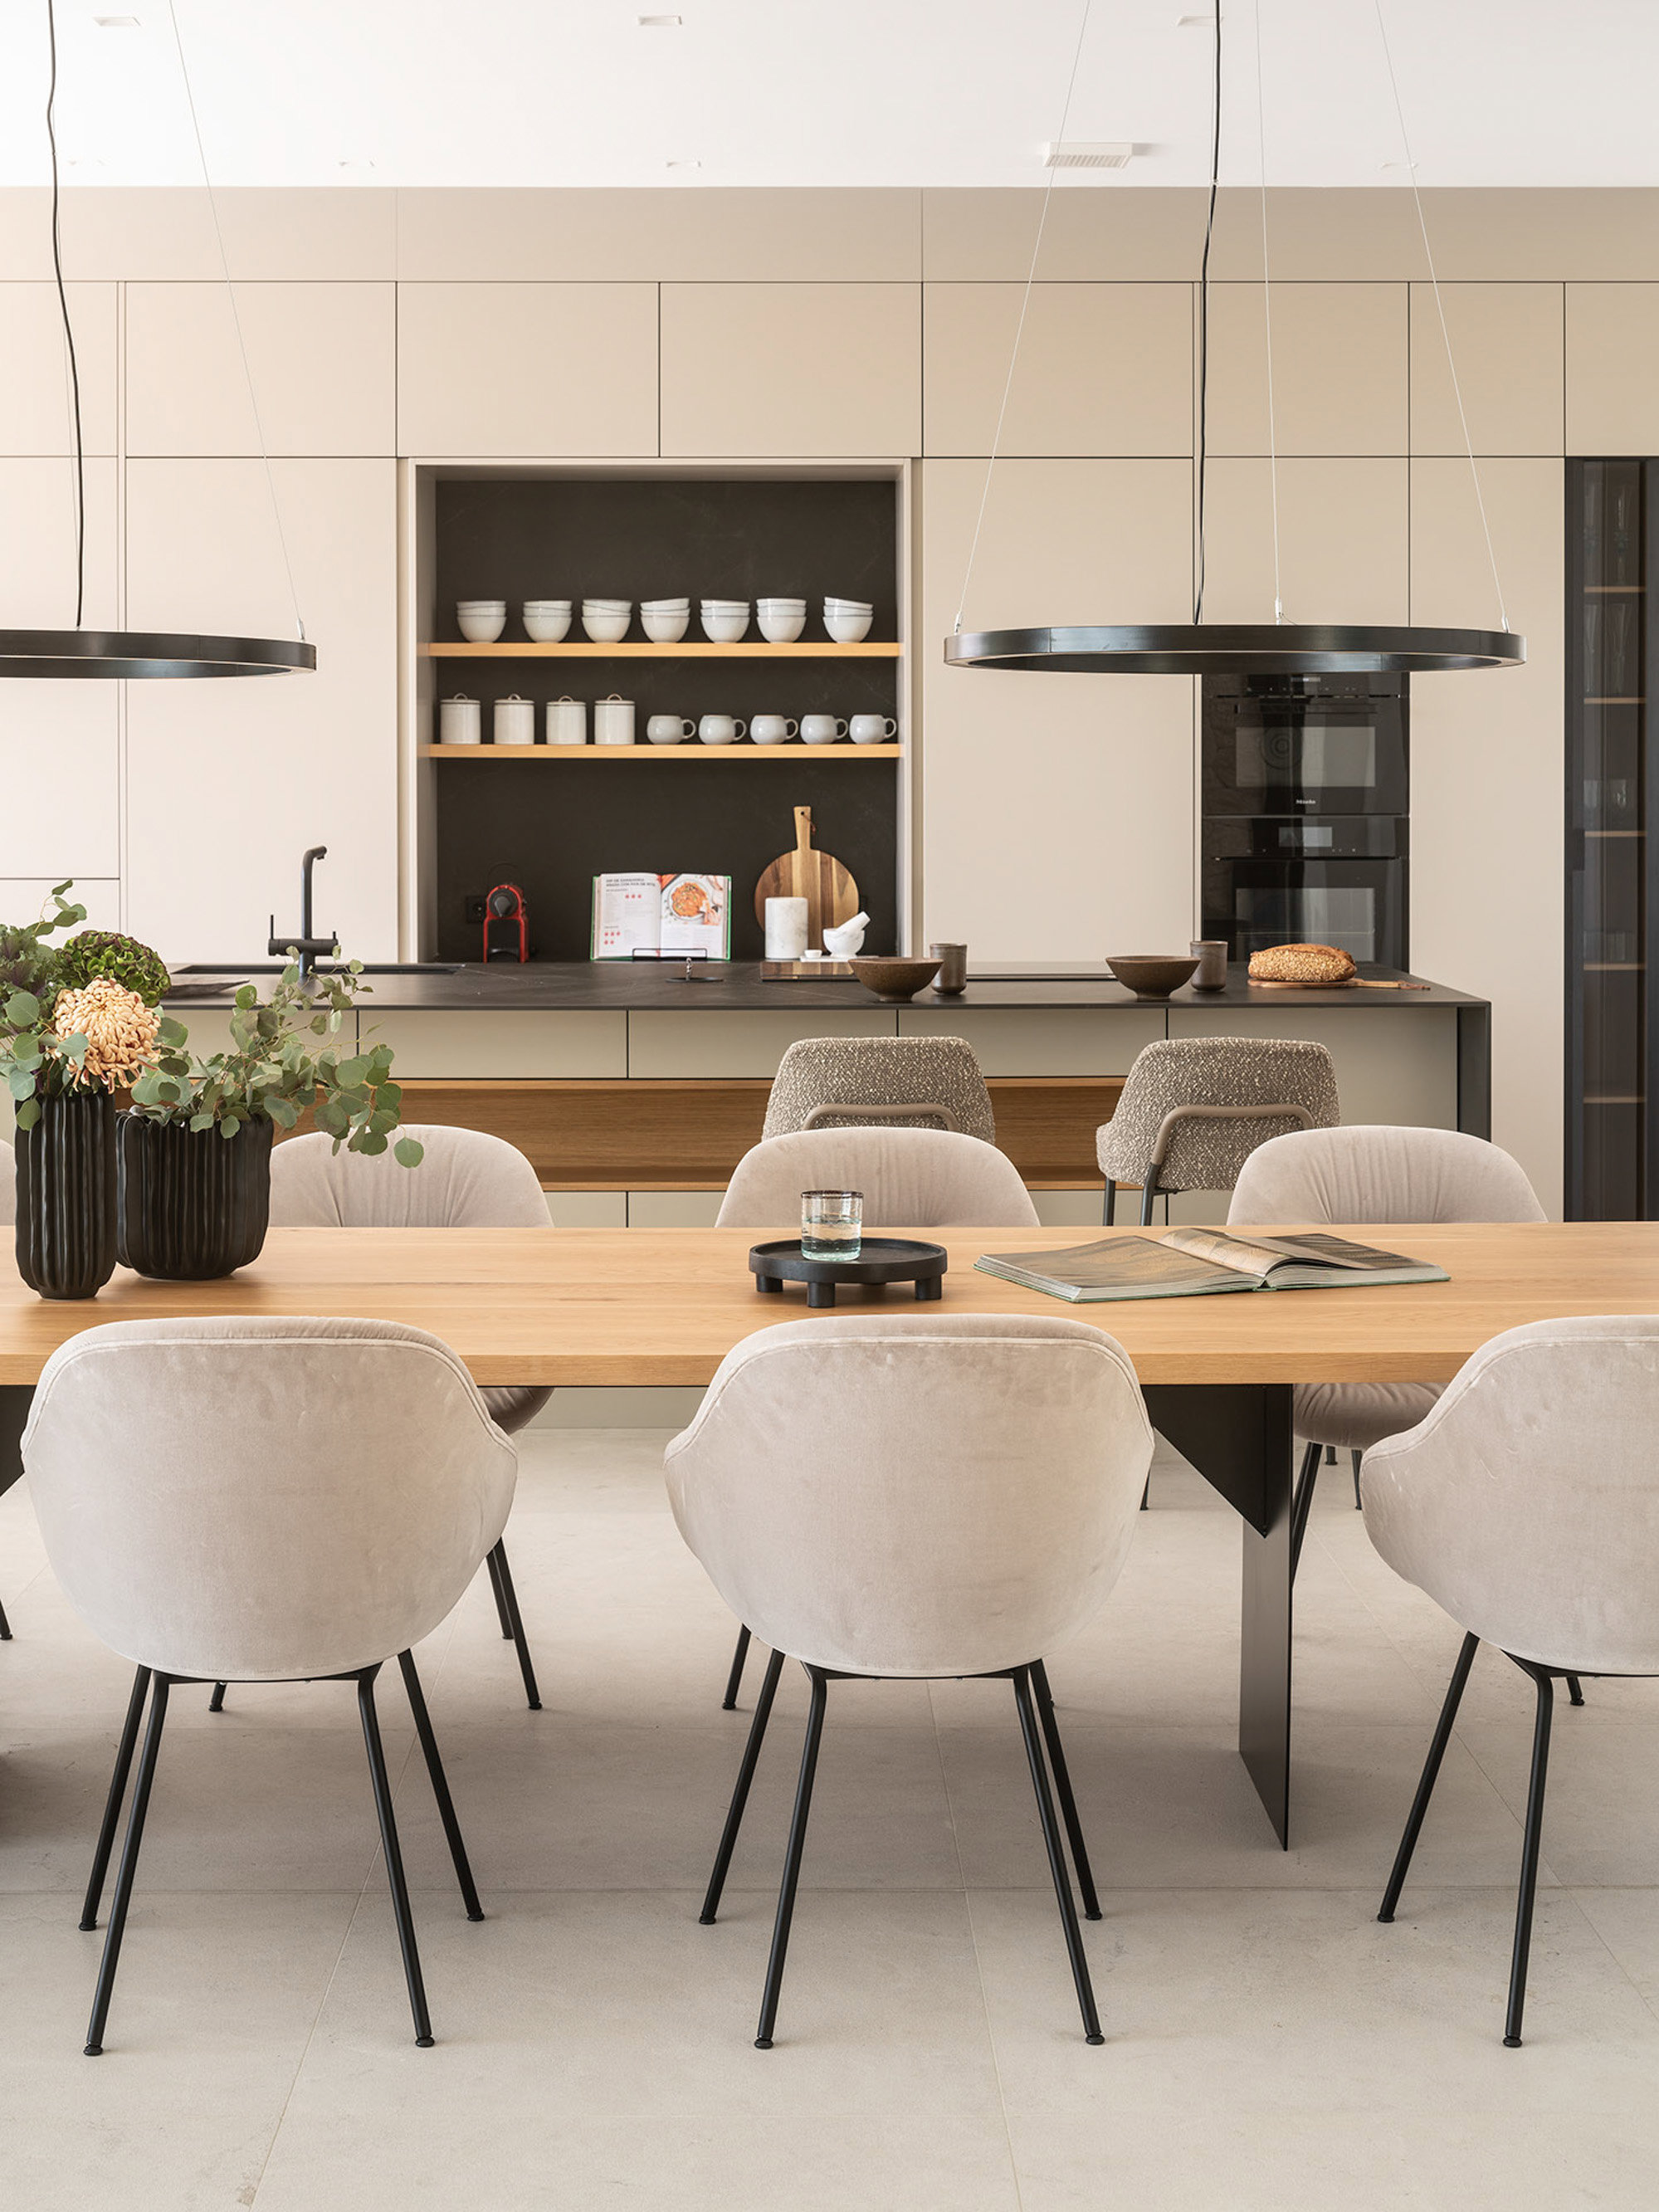 La cocina es un diseño realizado por Espacio Home Design.